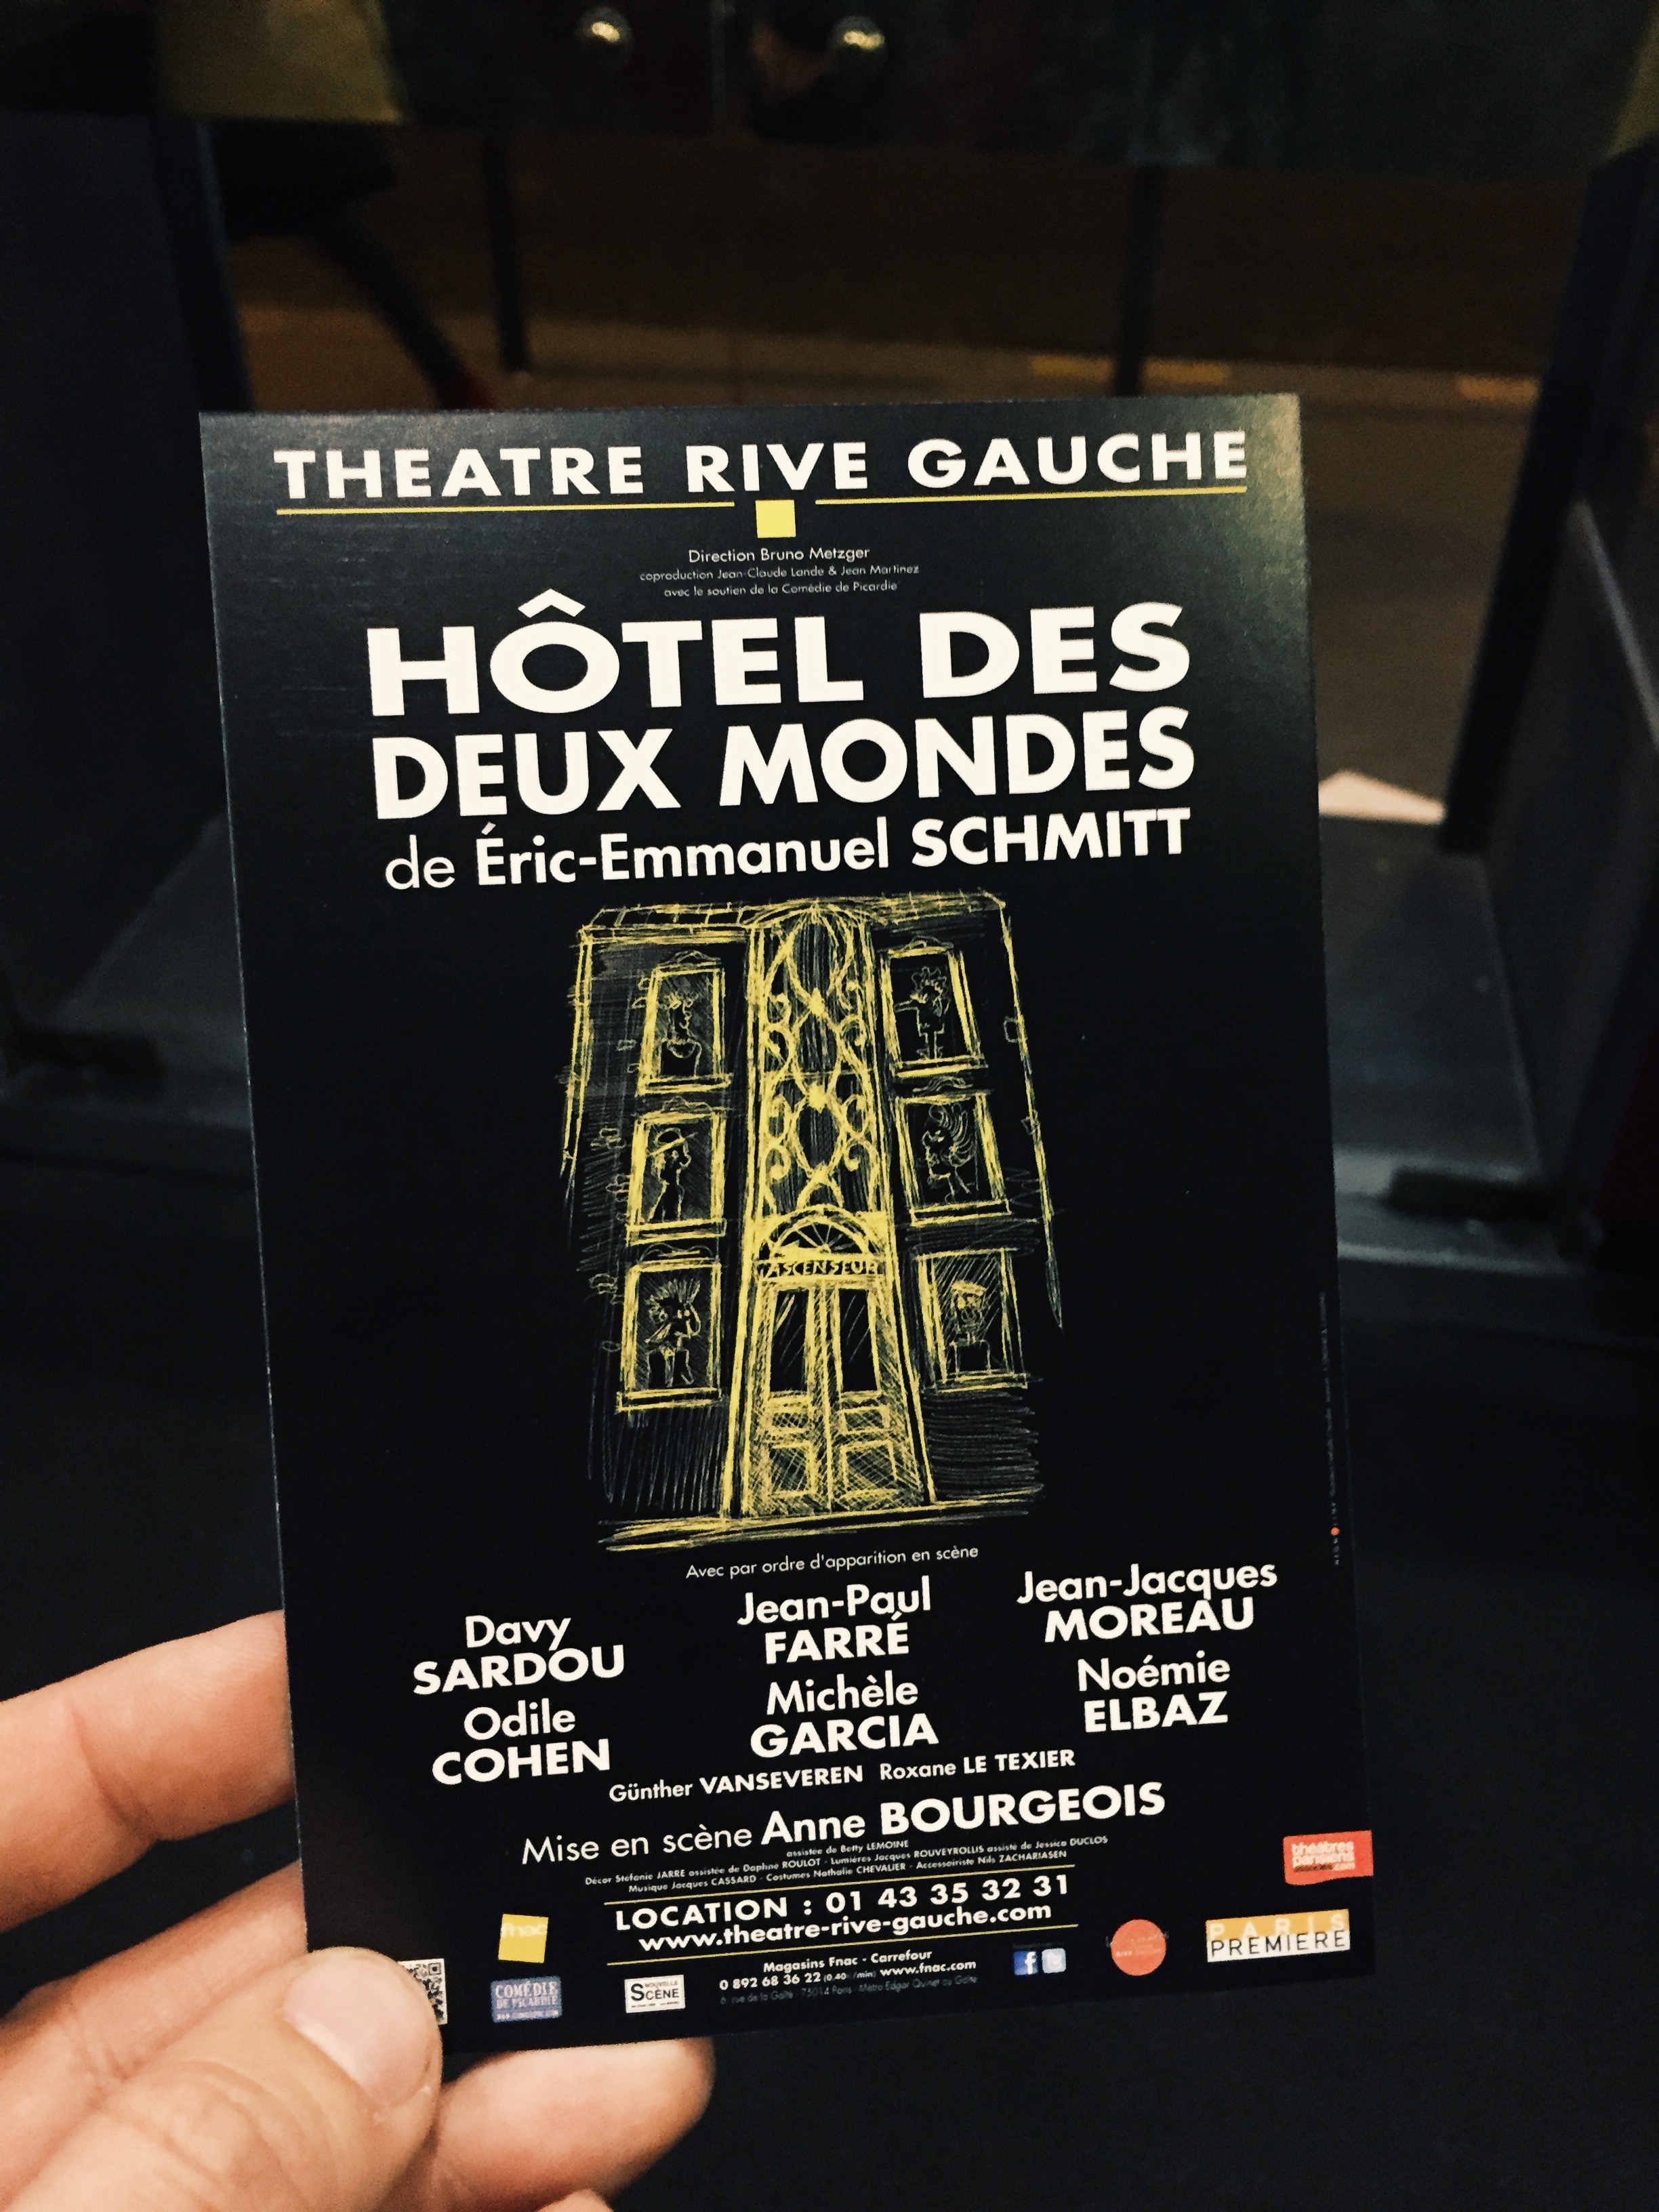 Affiche-Hôtel-des-deux-mondes-Théâtre-Rive-Gauche-Paris-Eric-Emmanuel-Schmitt-mise-en-scène-Anne-Bourgeois-critique-usofparis-blog